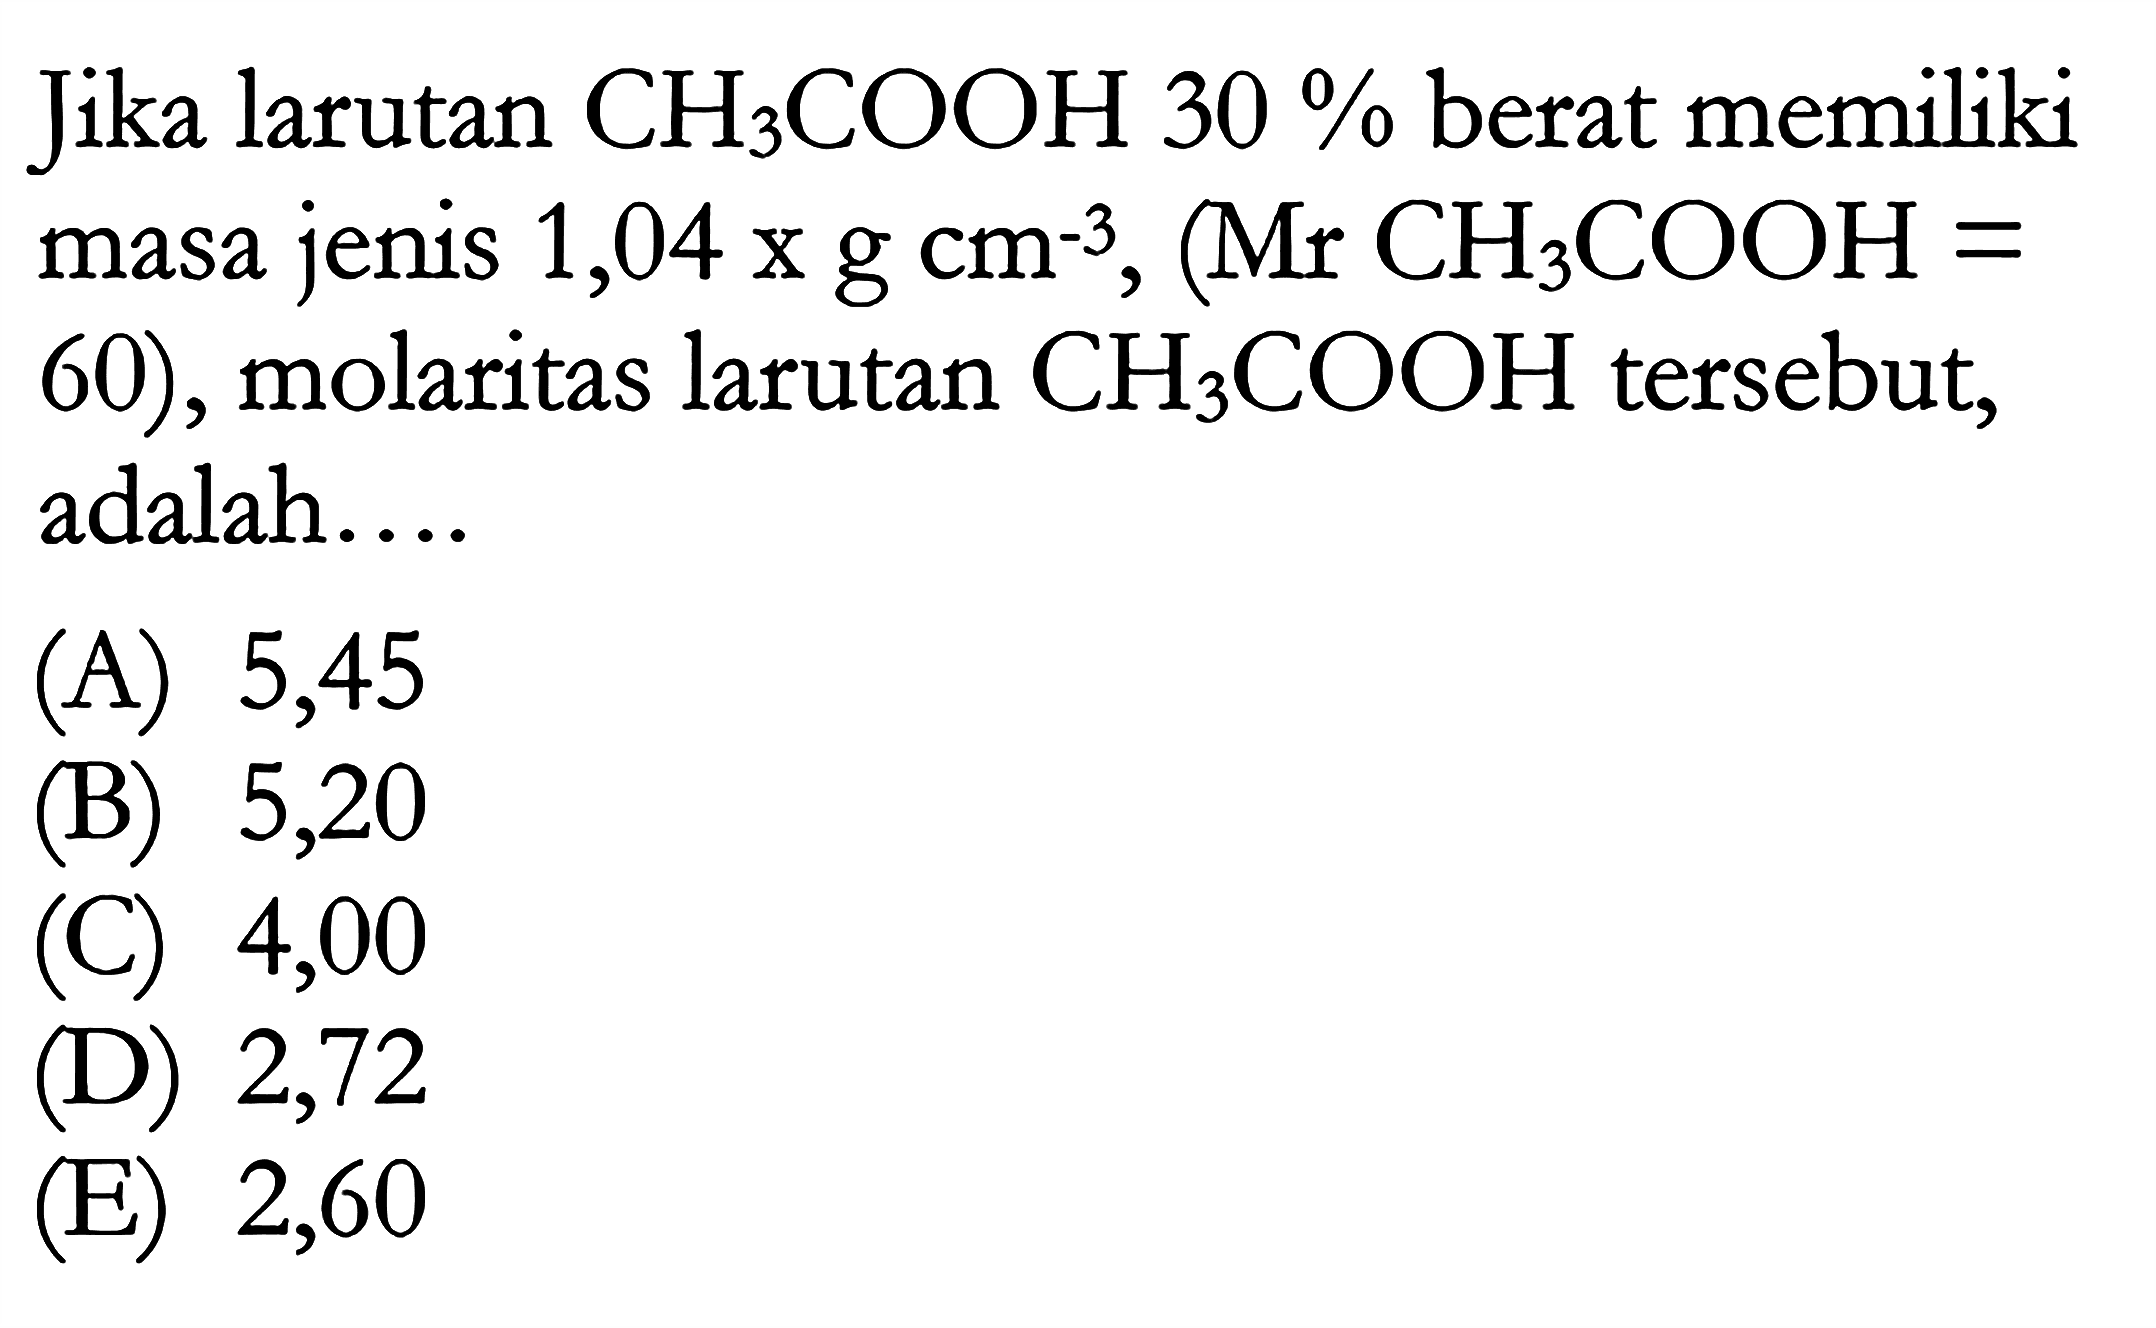 Jika larutan CH3COOH 30% berat memiliki masa jenis 1,04 x g cm^(-3), (Mr CH3COOH = 60), molaritas larutan CH3COOH tersebut, adalah ...